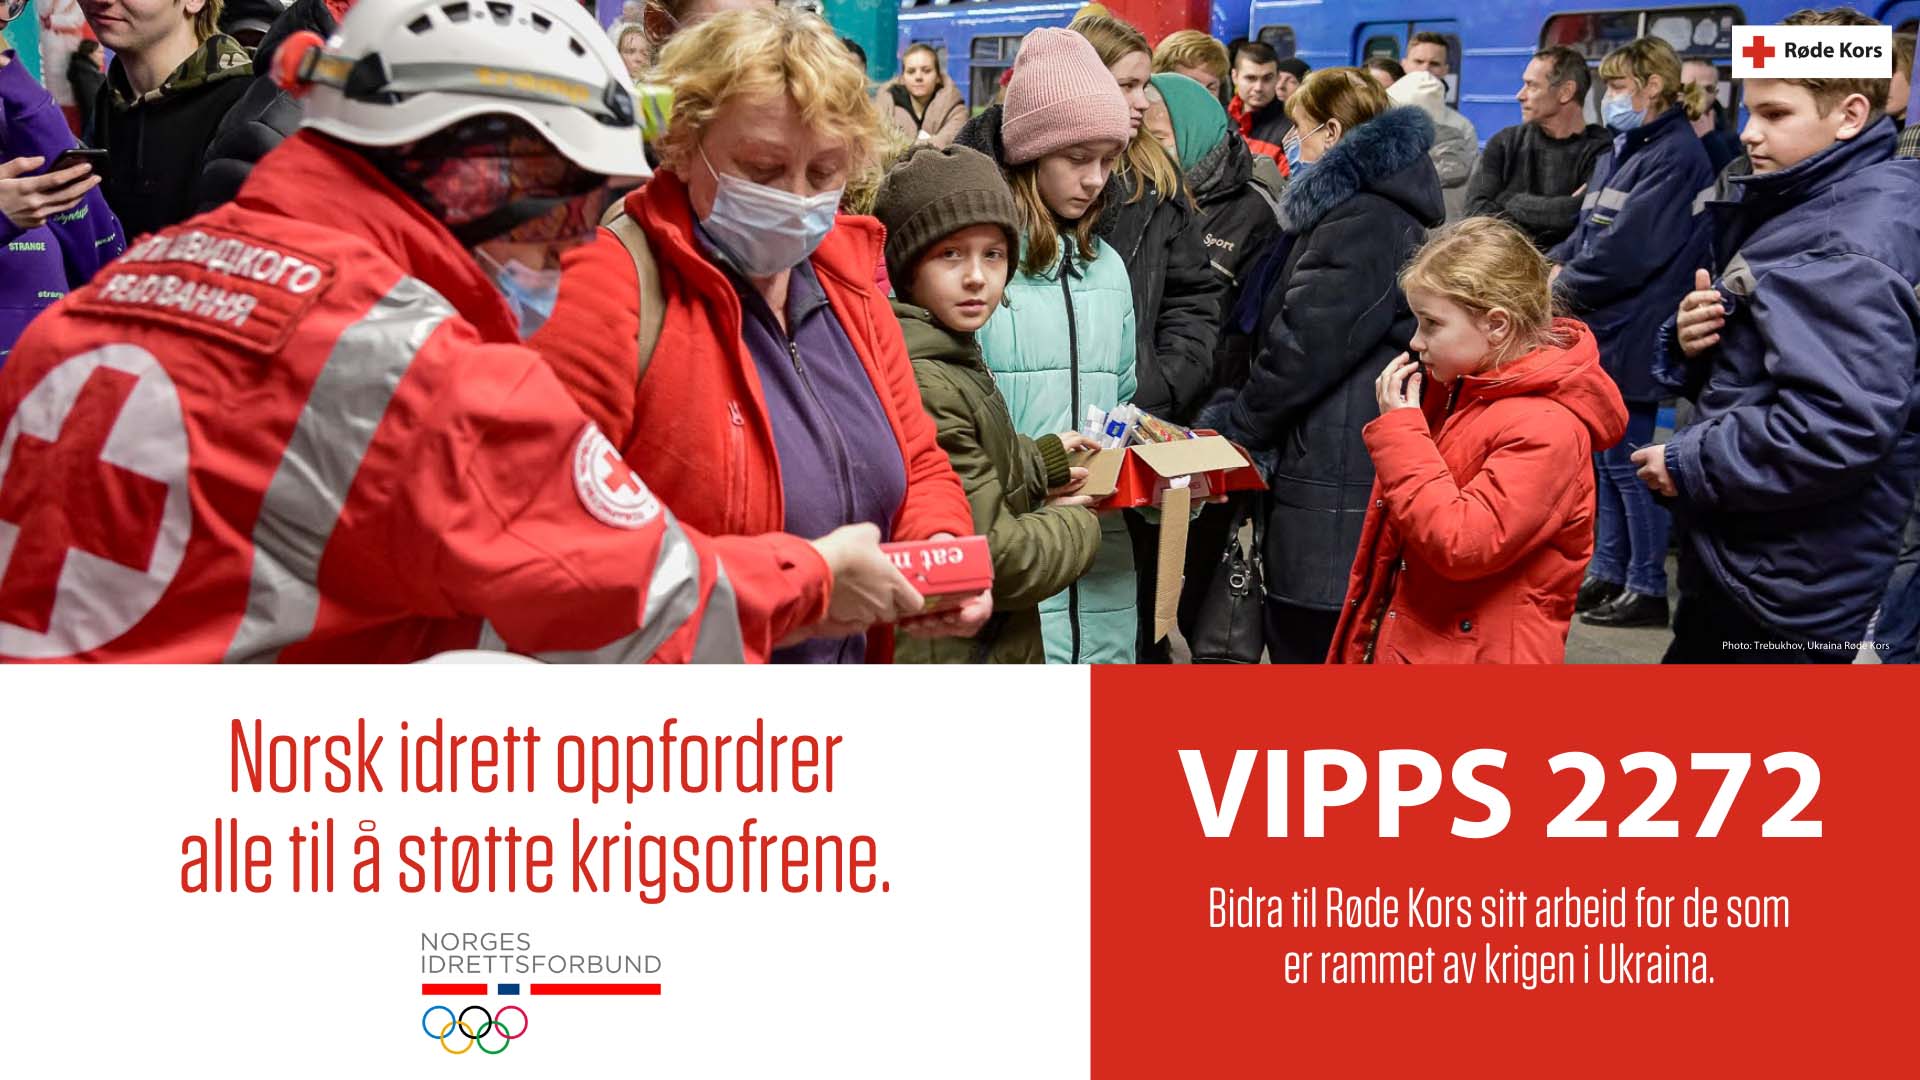 Norsk idrett støtter Røde Kors sitt arbeid i Ukraina.